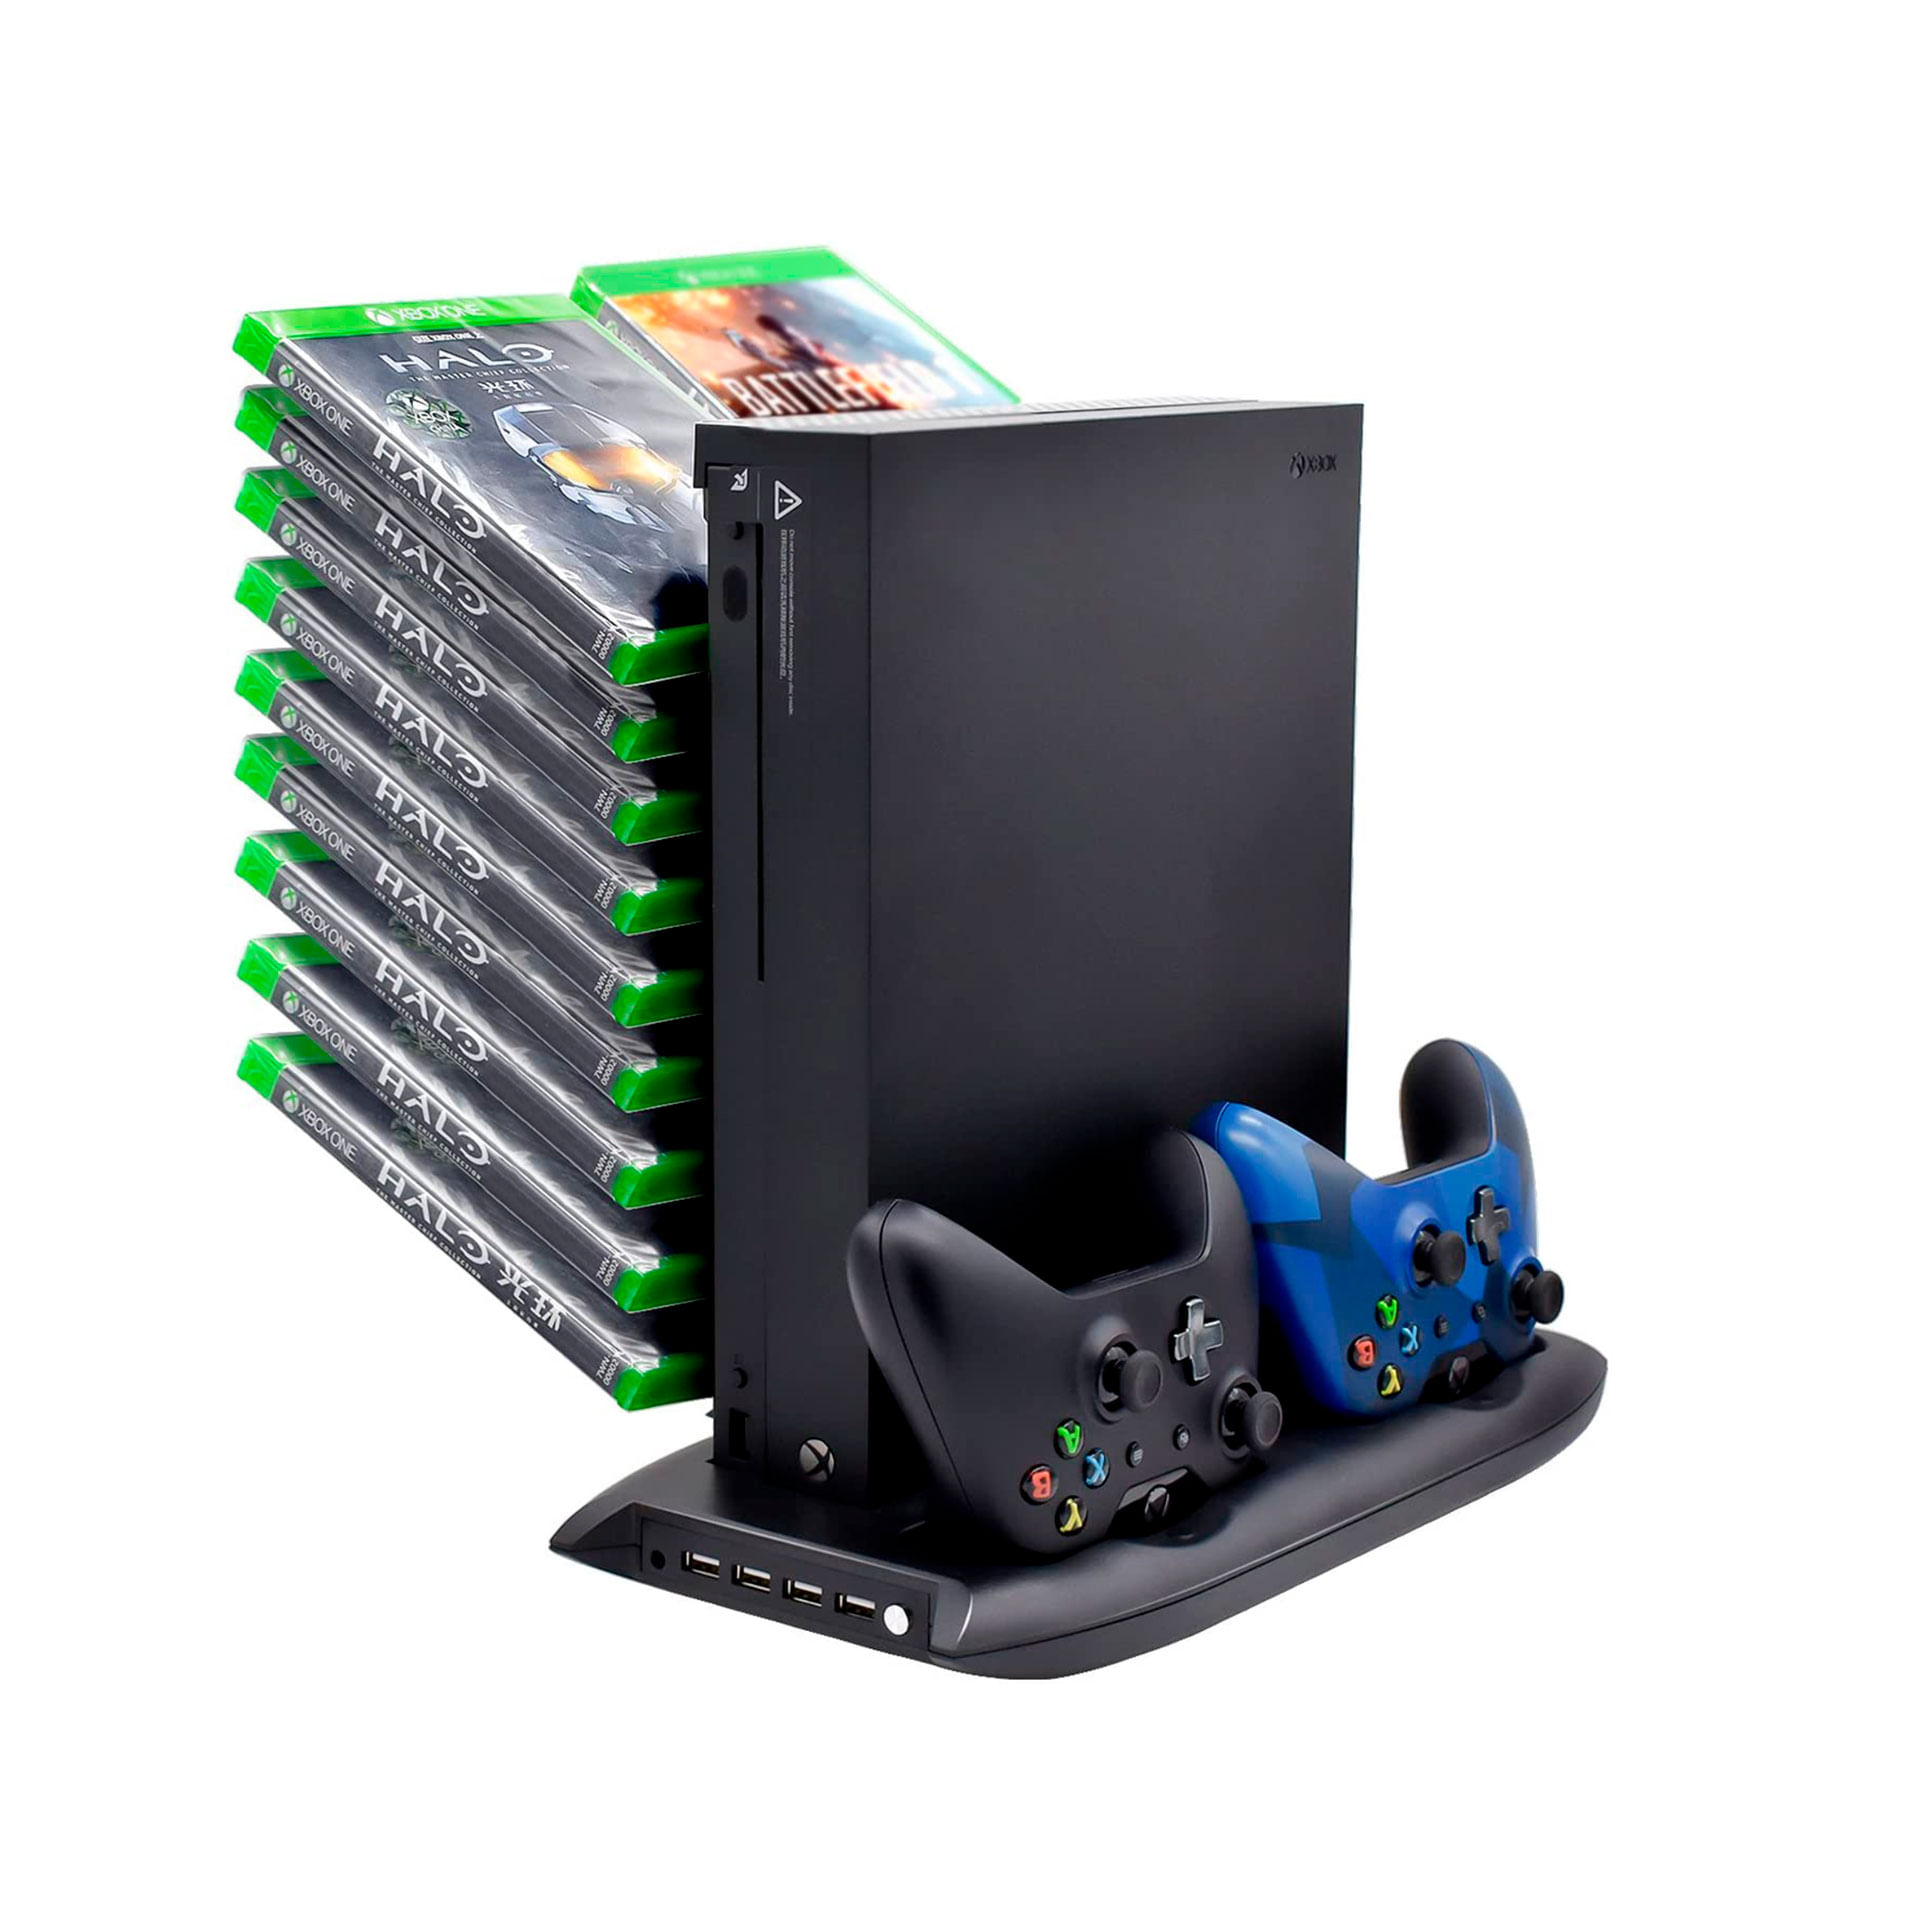 Base Cargador Stand Ventilador Cooler Para Xbox One X